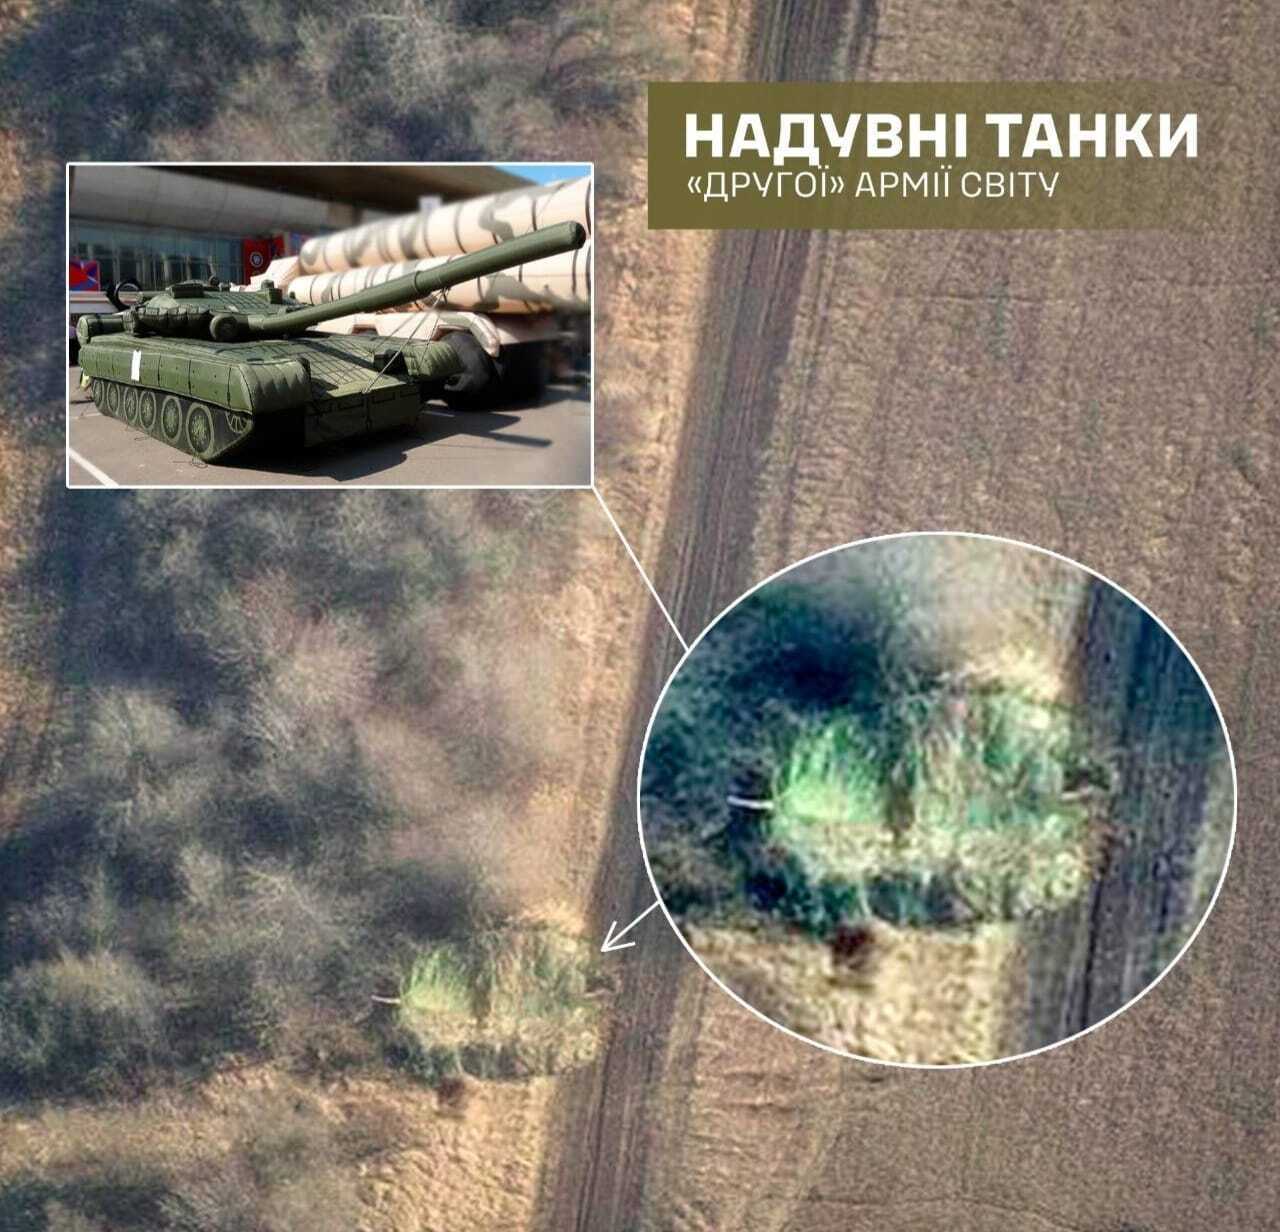 ''Вторая армия мира'' использует резиновые танки на поле боя: в ВСУ объяснили, чего добиваются оккупанты